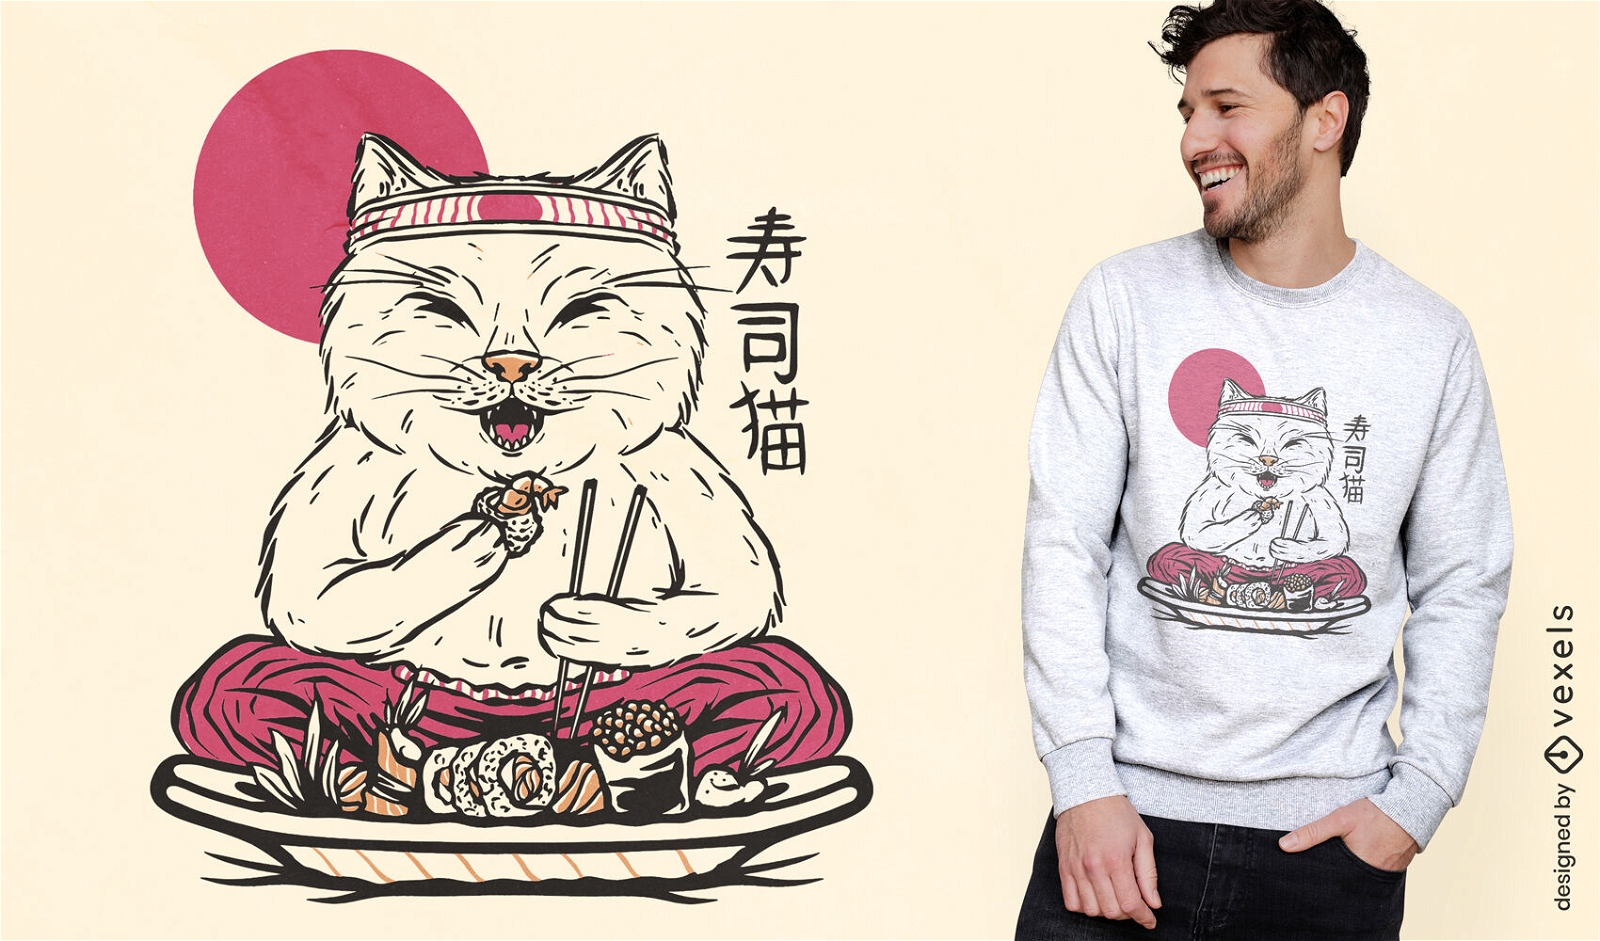 Dise?o de camiseta de gato comiendo sushi.